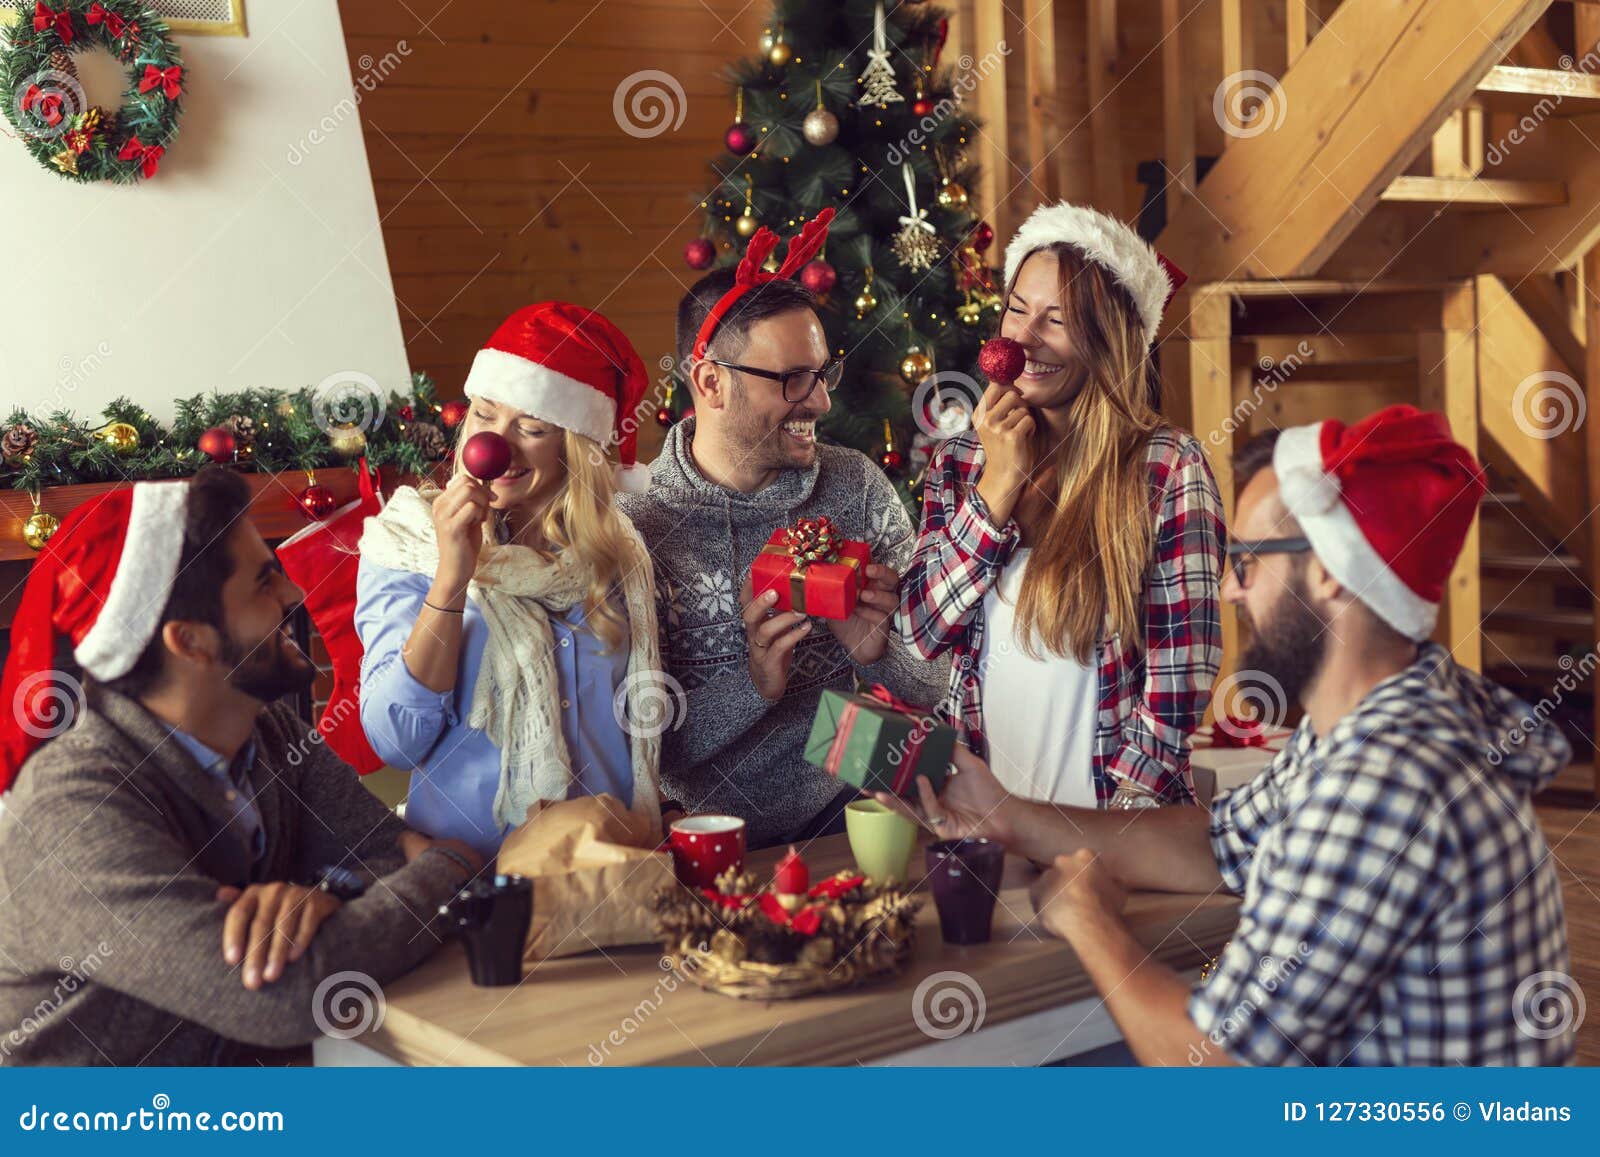 Regali Di Natale Amici.Scambio Dei Regali Di Natale Fotografia Stock Immagine Di Svago Domestico 127330556